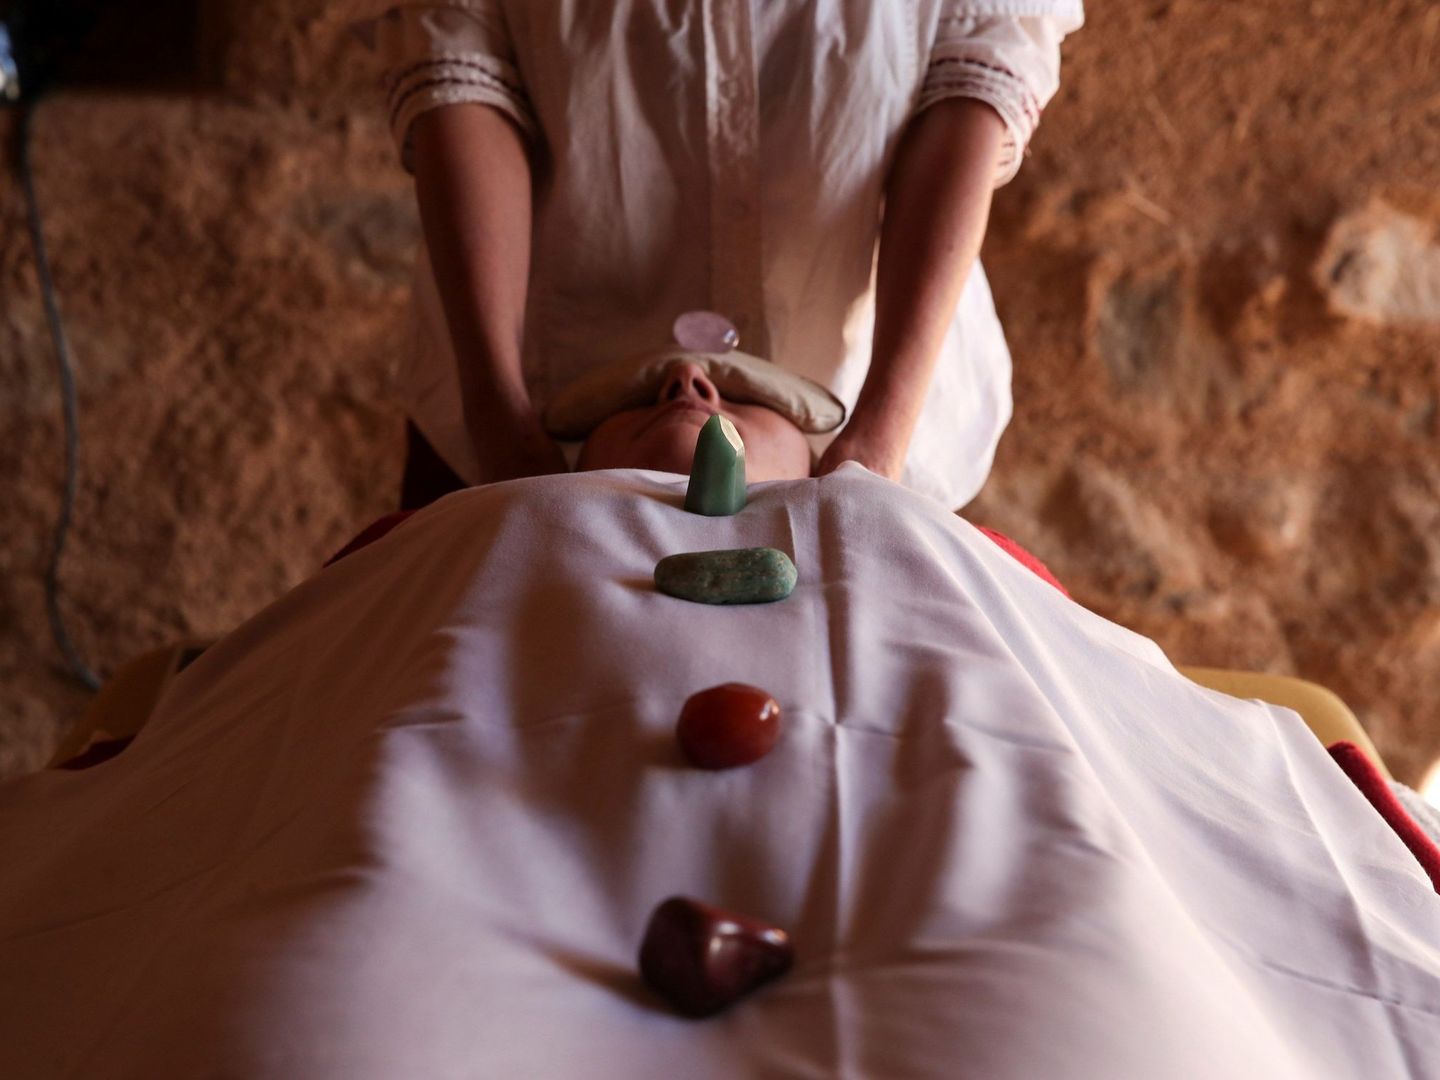 Una mujer disfruta de una terapia de masaje.